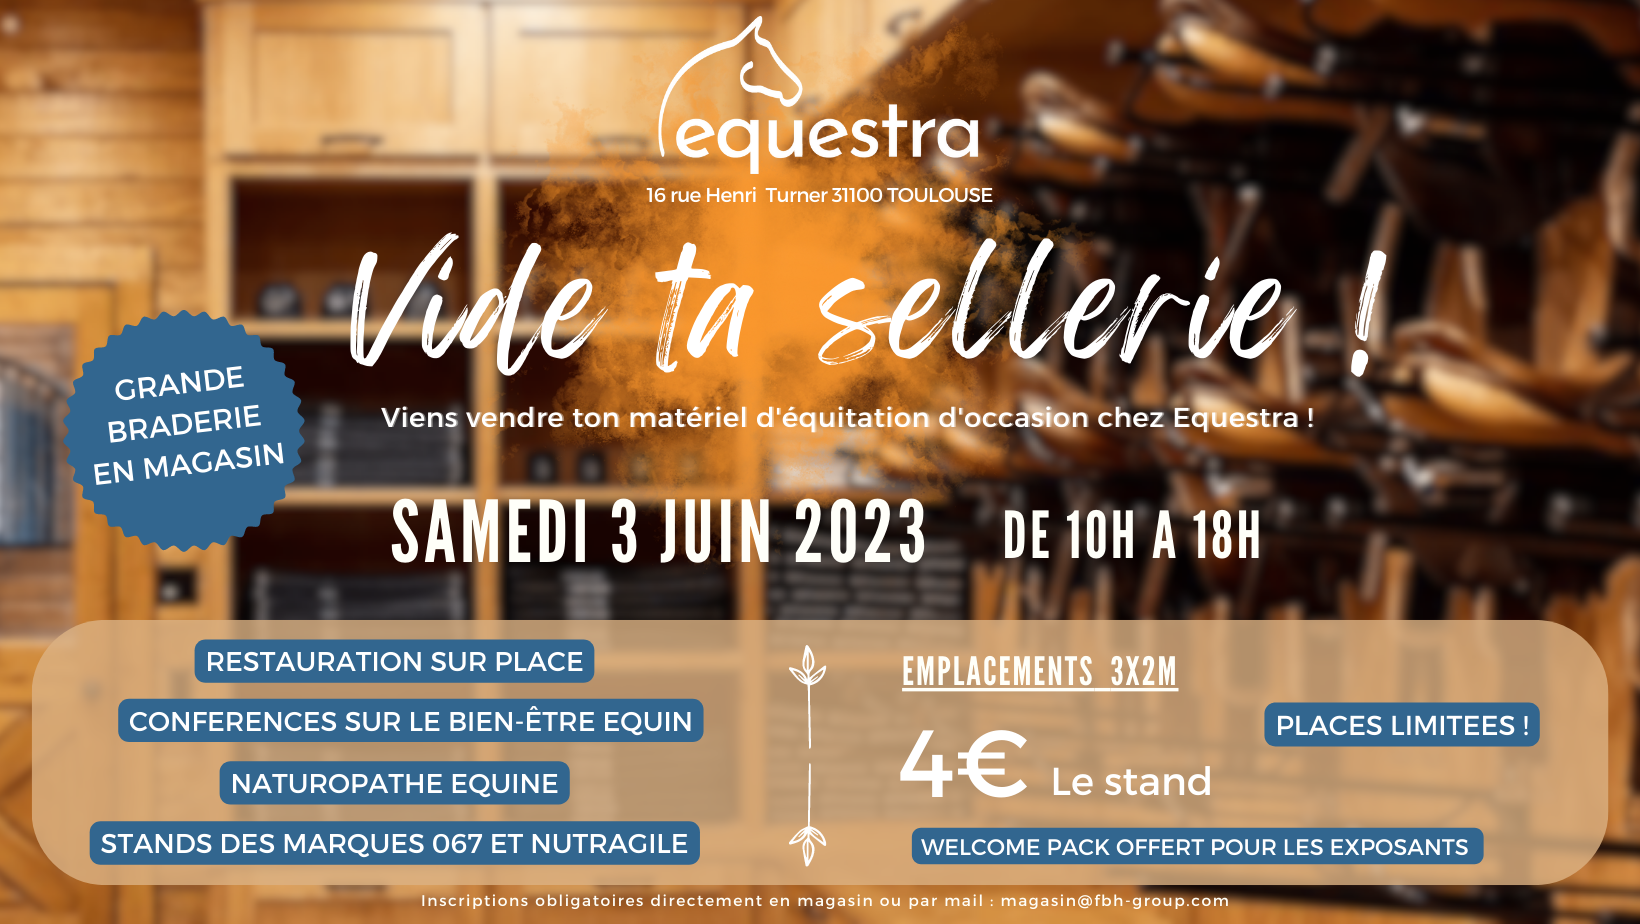 Lire la suite à propos de l’article “Vide Ta Sellerie !” chez Equestra Toulouse !